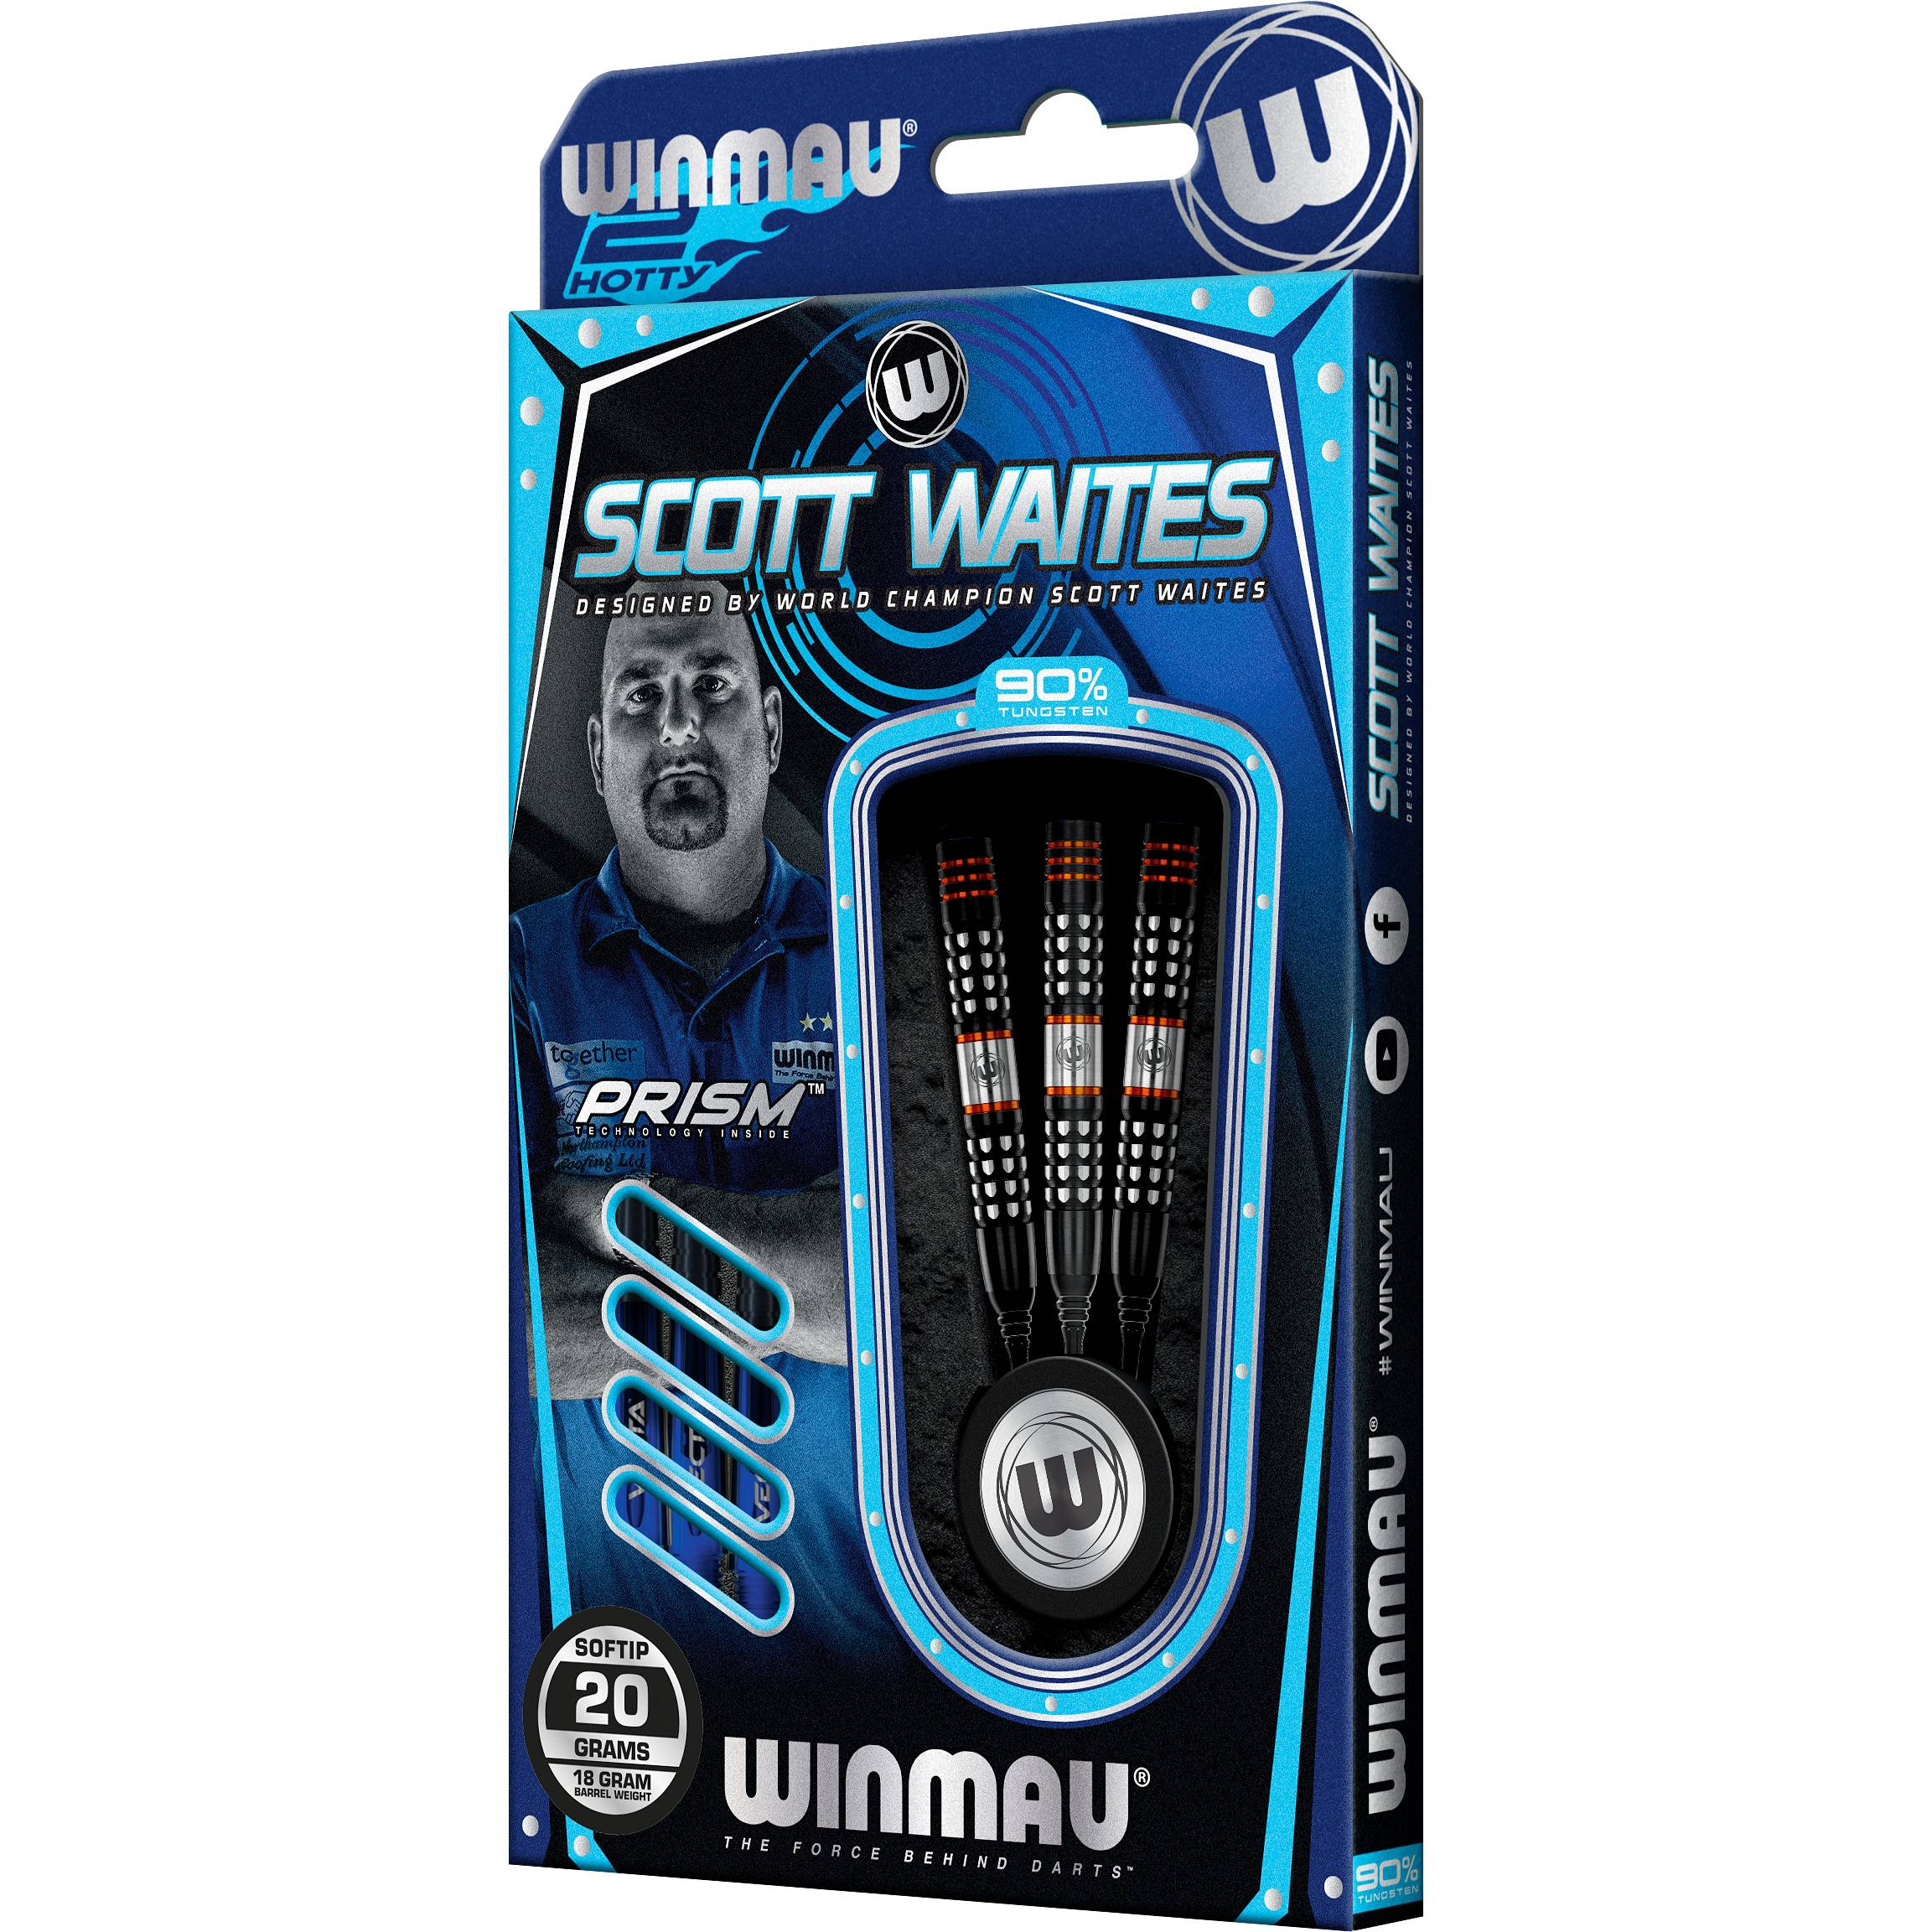 Winmau - Scott Waites - Softdart